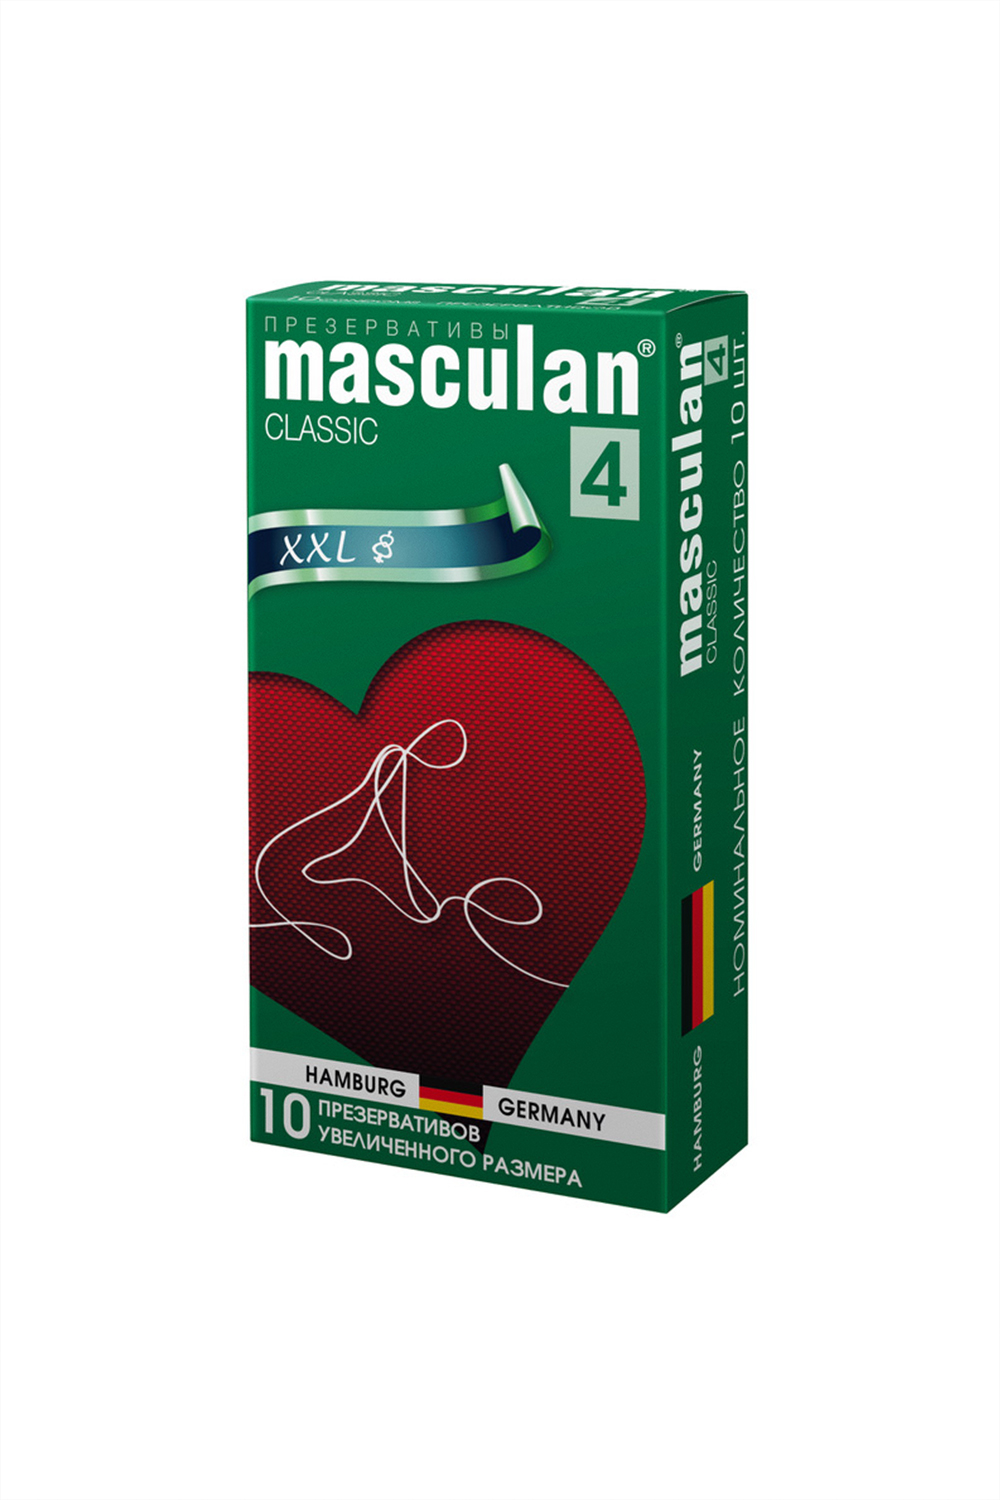 Презервативы Masculan 4 Classic Увеличенного размера, 10шт